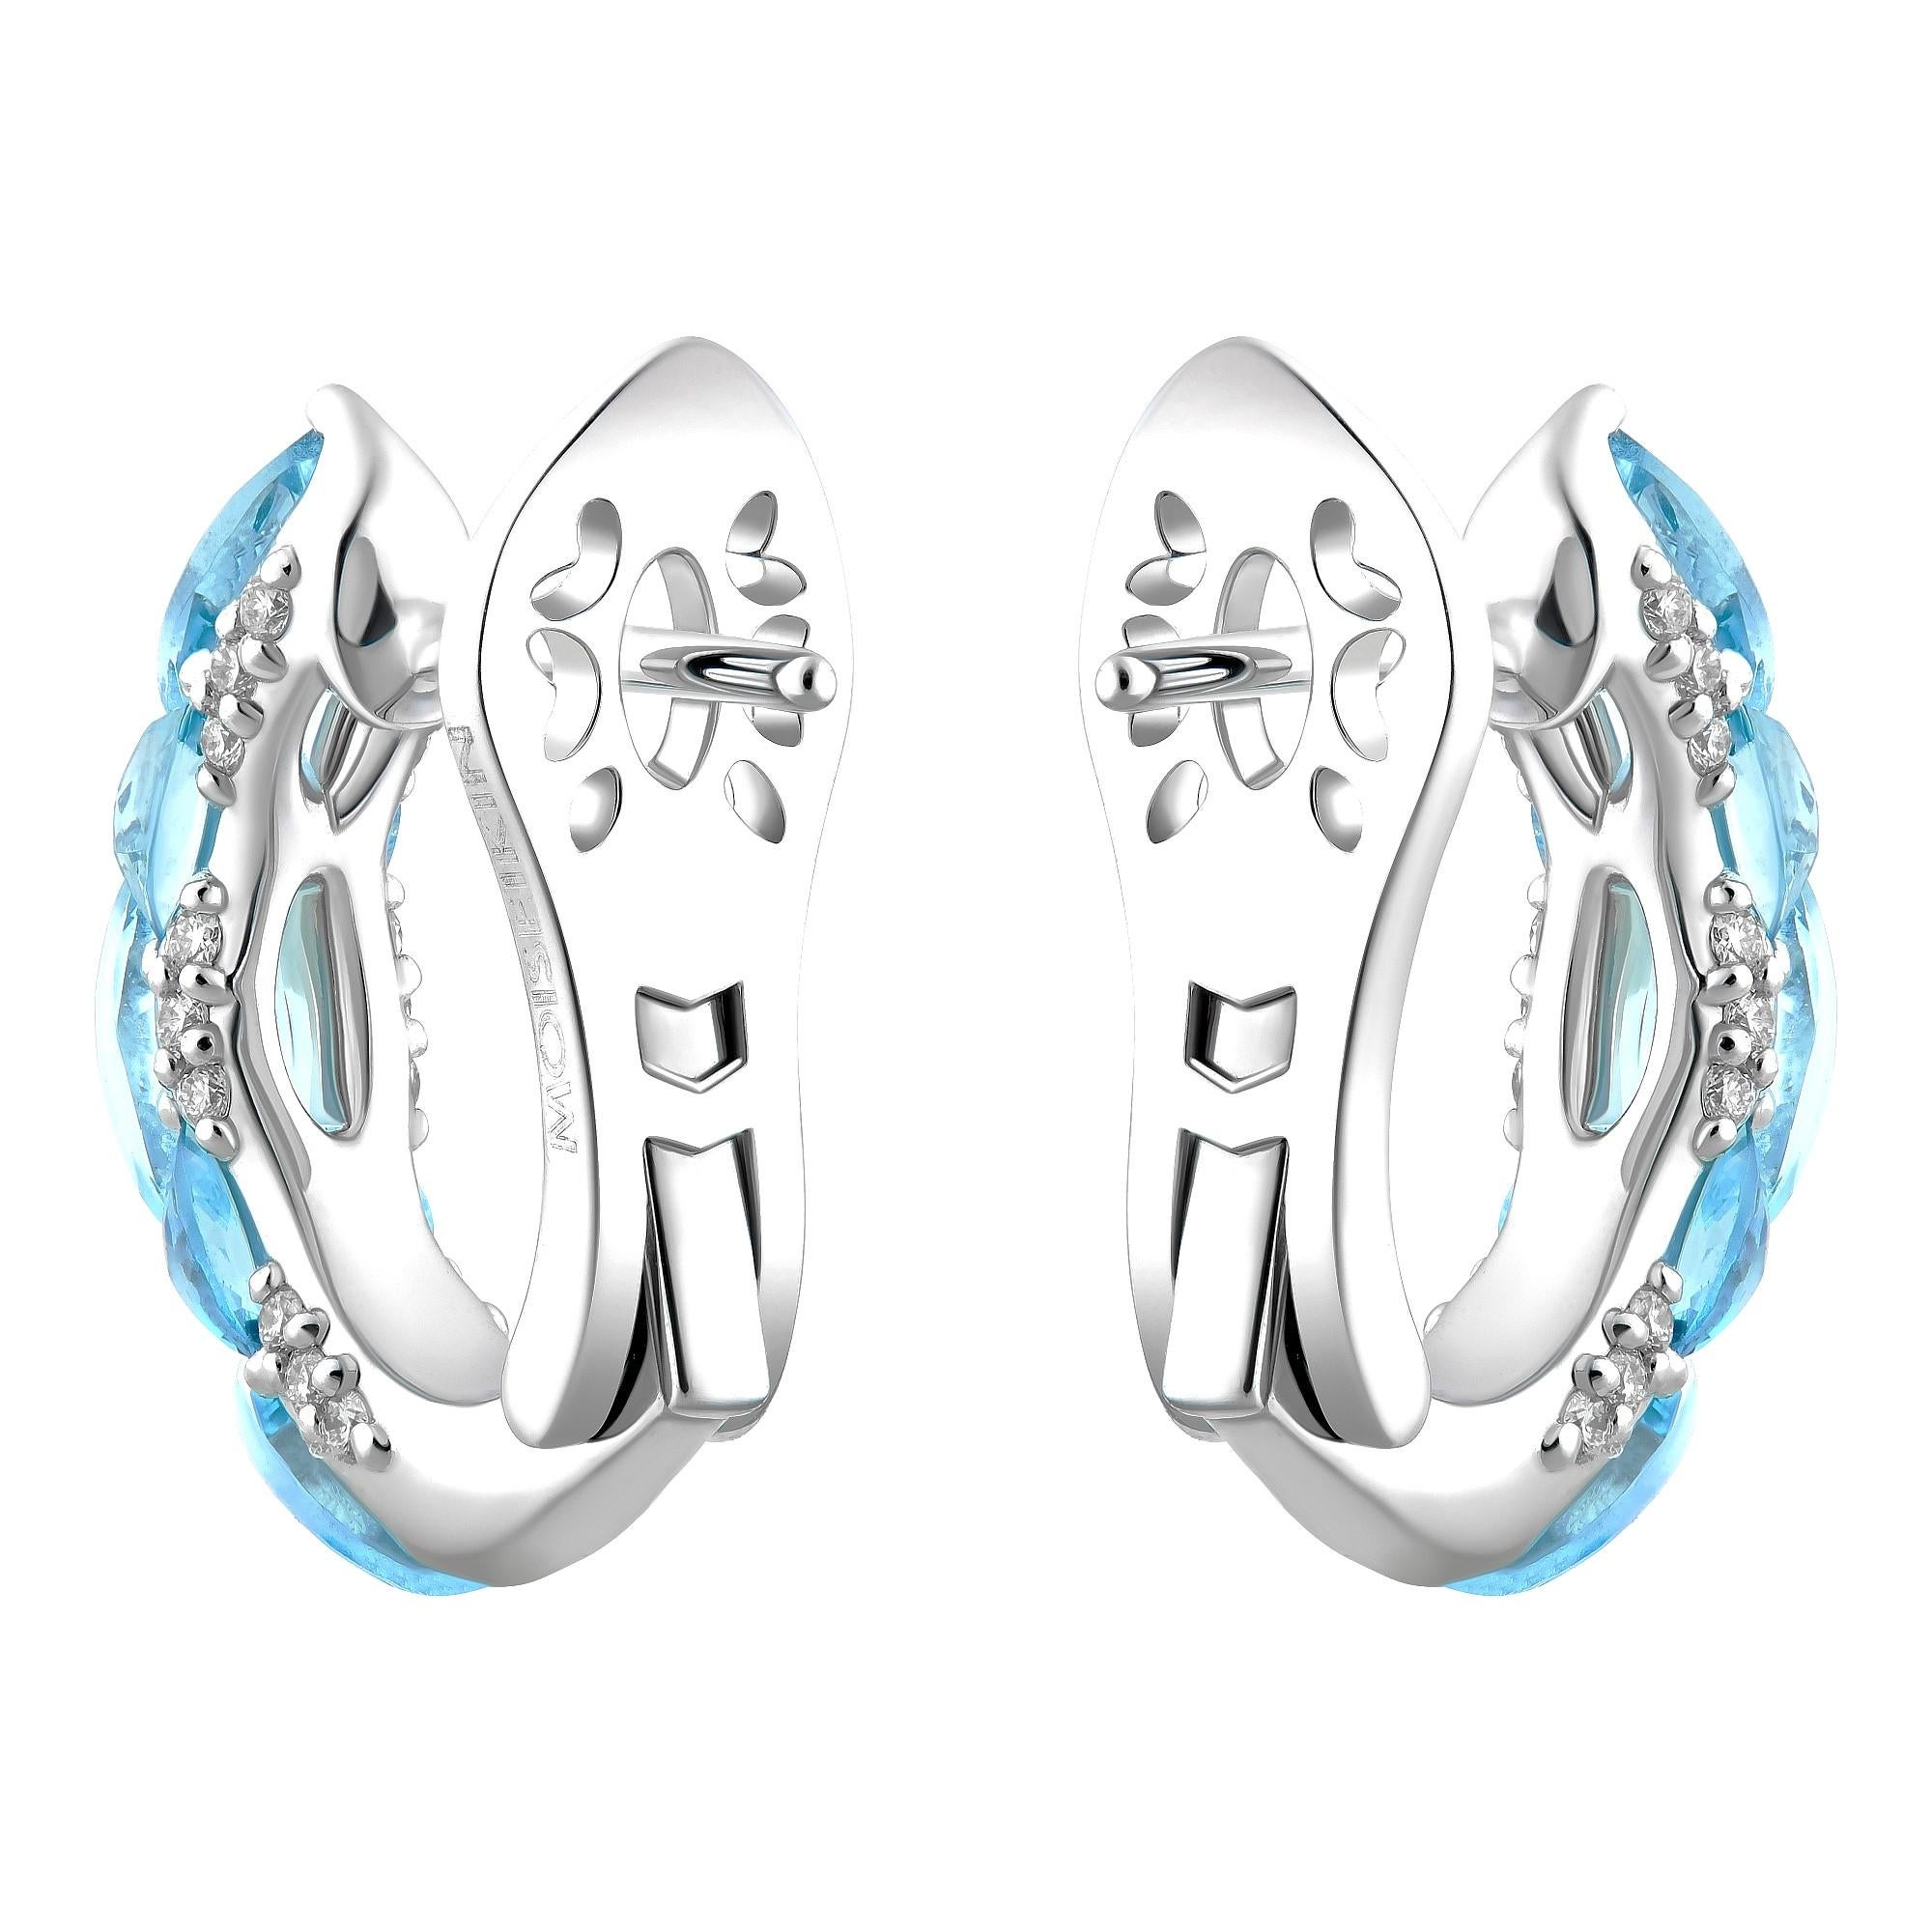 Die exquisiten, eleganten Ohrringe aus der Harmony of Water Collection'S von MOISEIKIN sind aus Santa Maria Aquamarinen und schimmernden Diamanten gefertigt.
Die leichte Harmonie von Aquamarinen in traditionellen und einzigartigen Umkehrfassungen